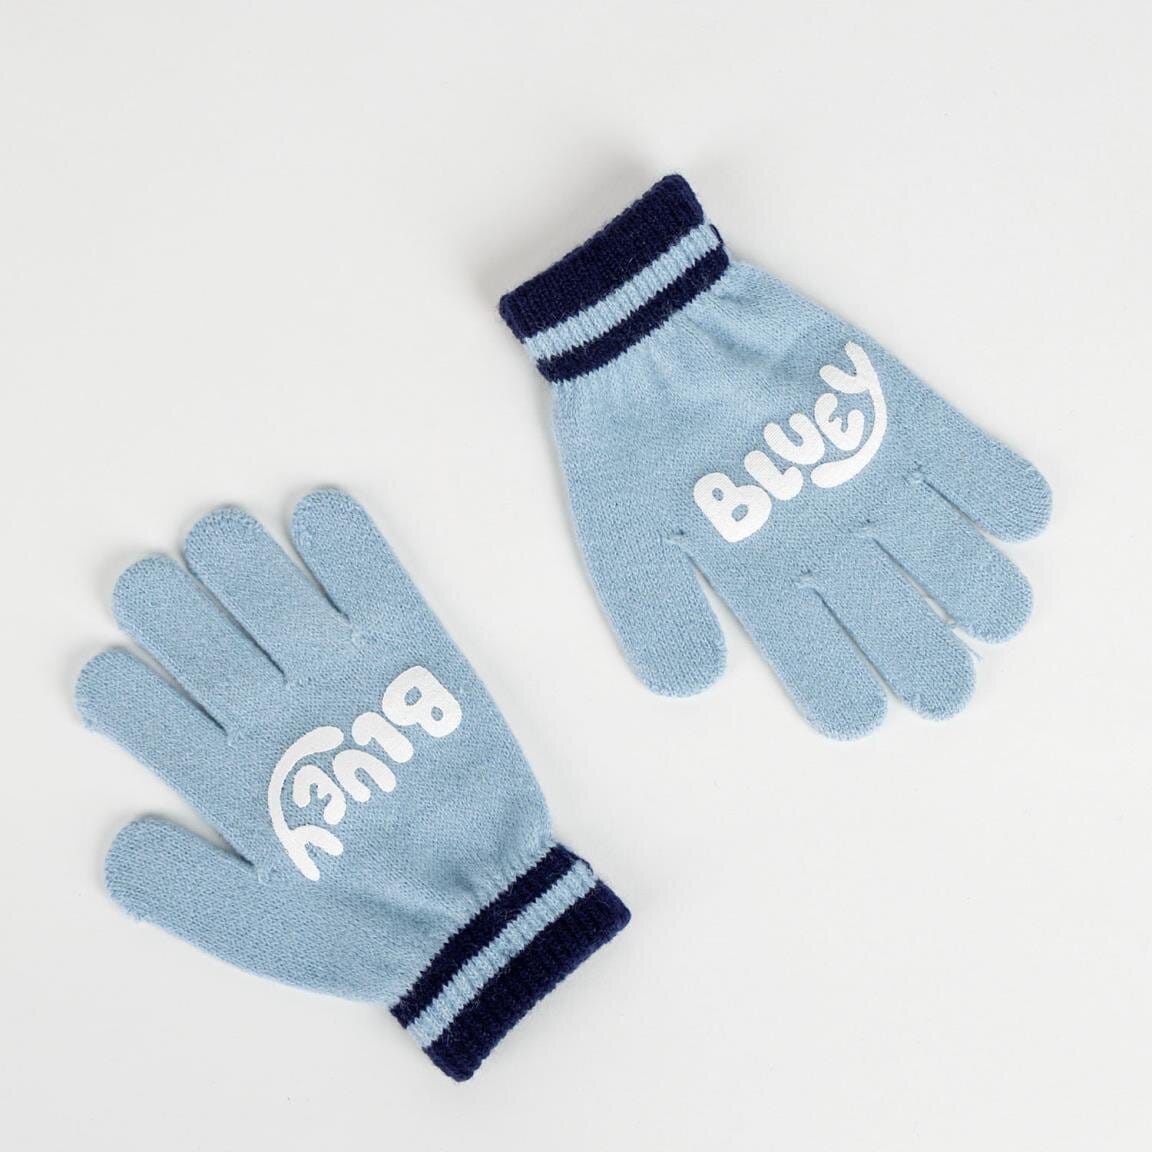 Bluey - Mütze und Handschuhe